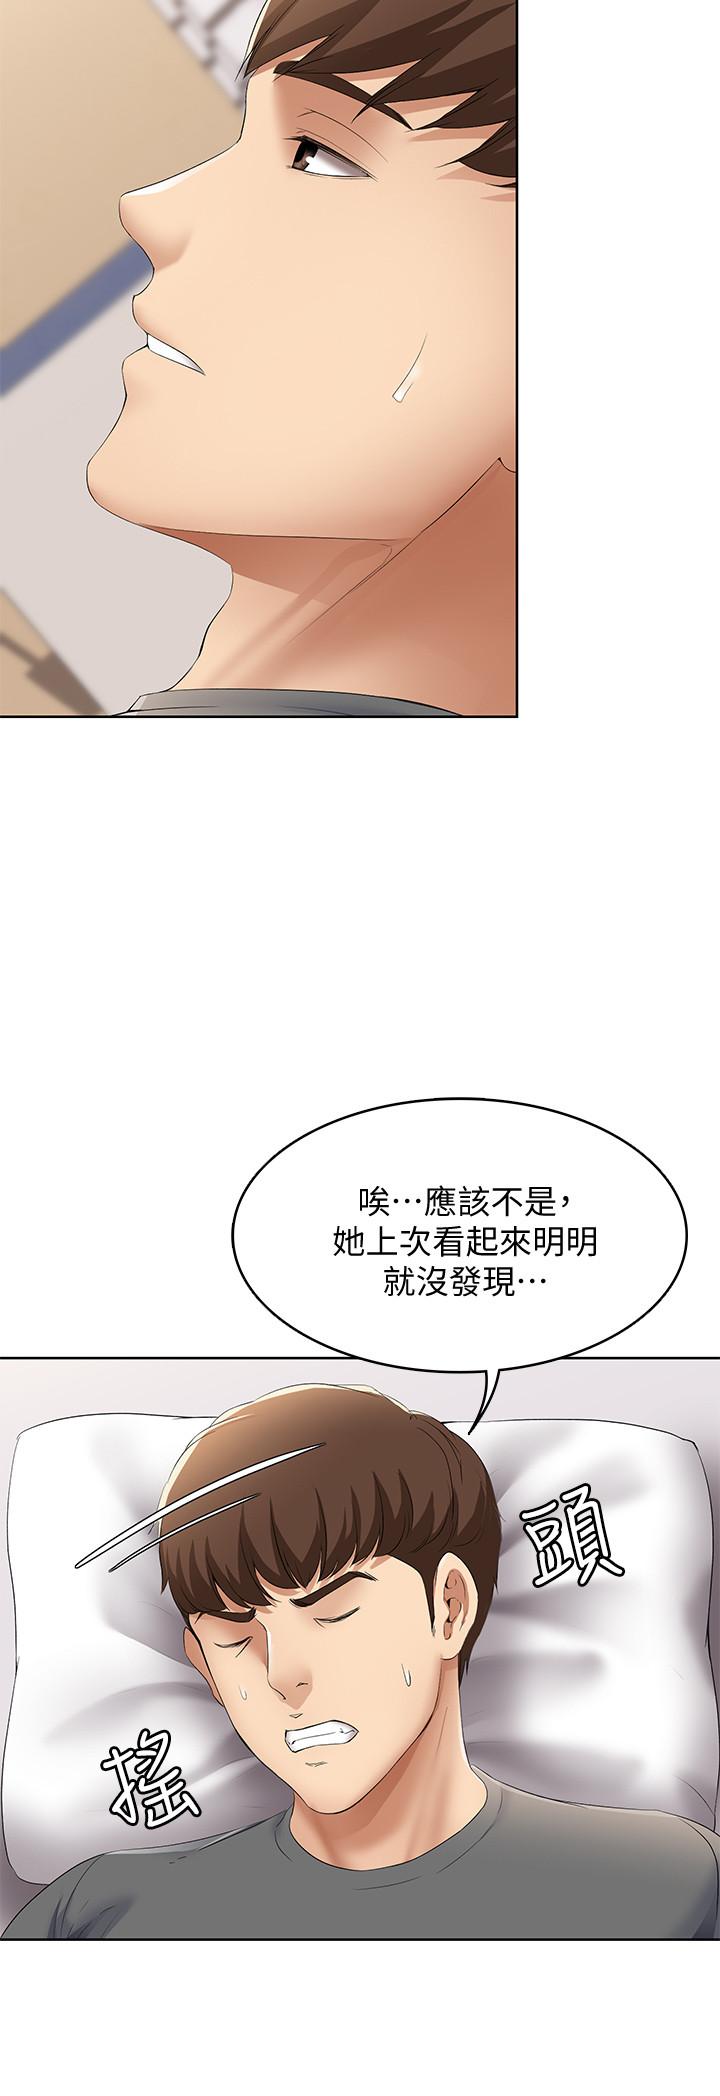 韩国污漫画 寄宿日記 第7话-可以让我看你老二吗 23